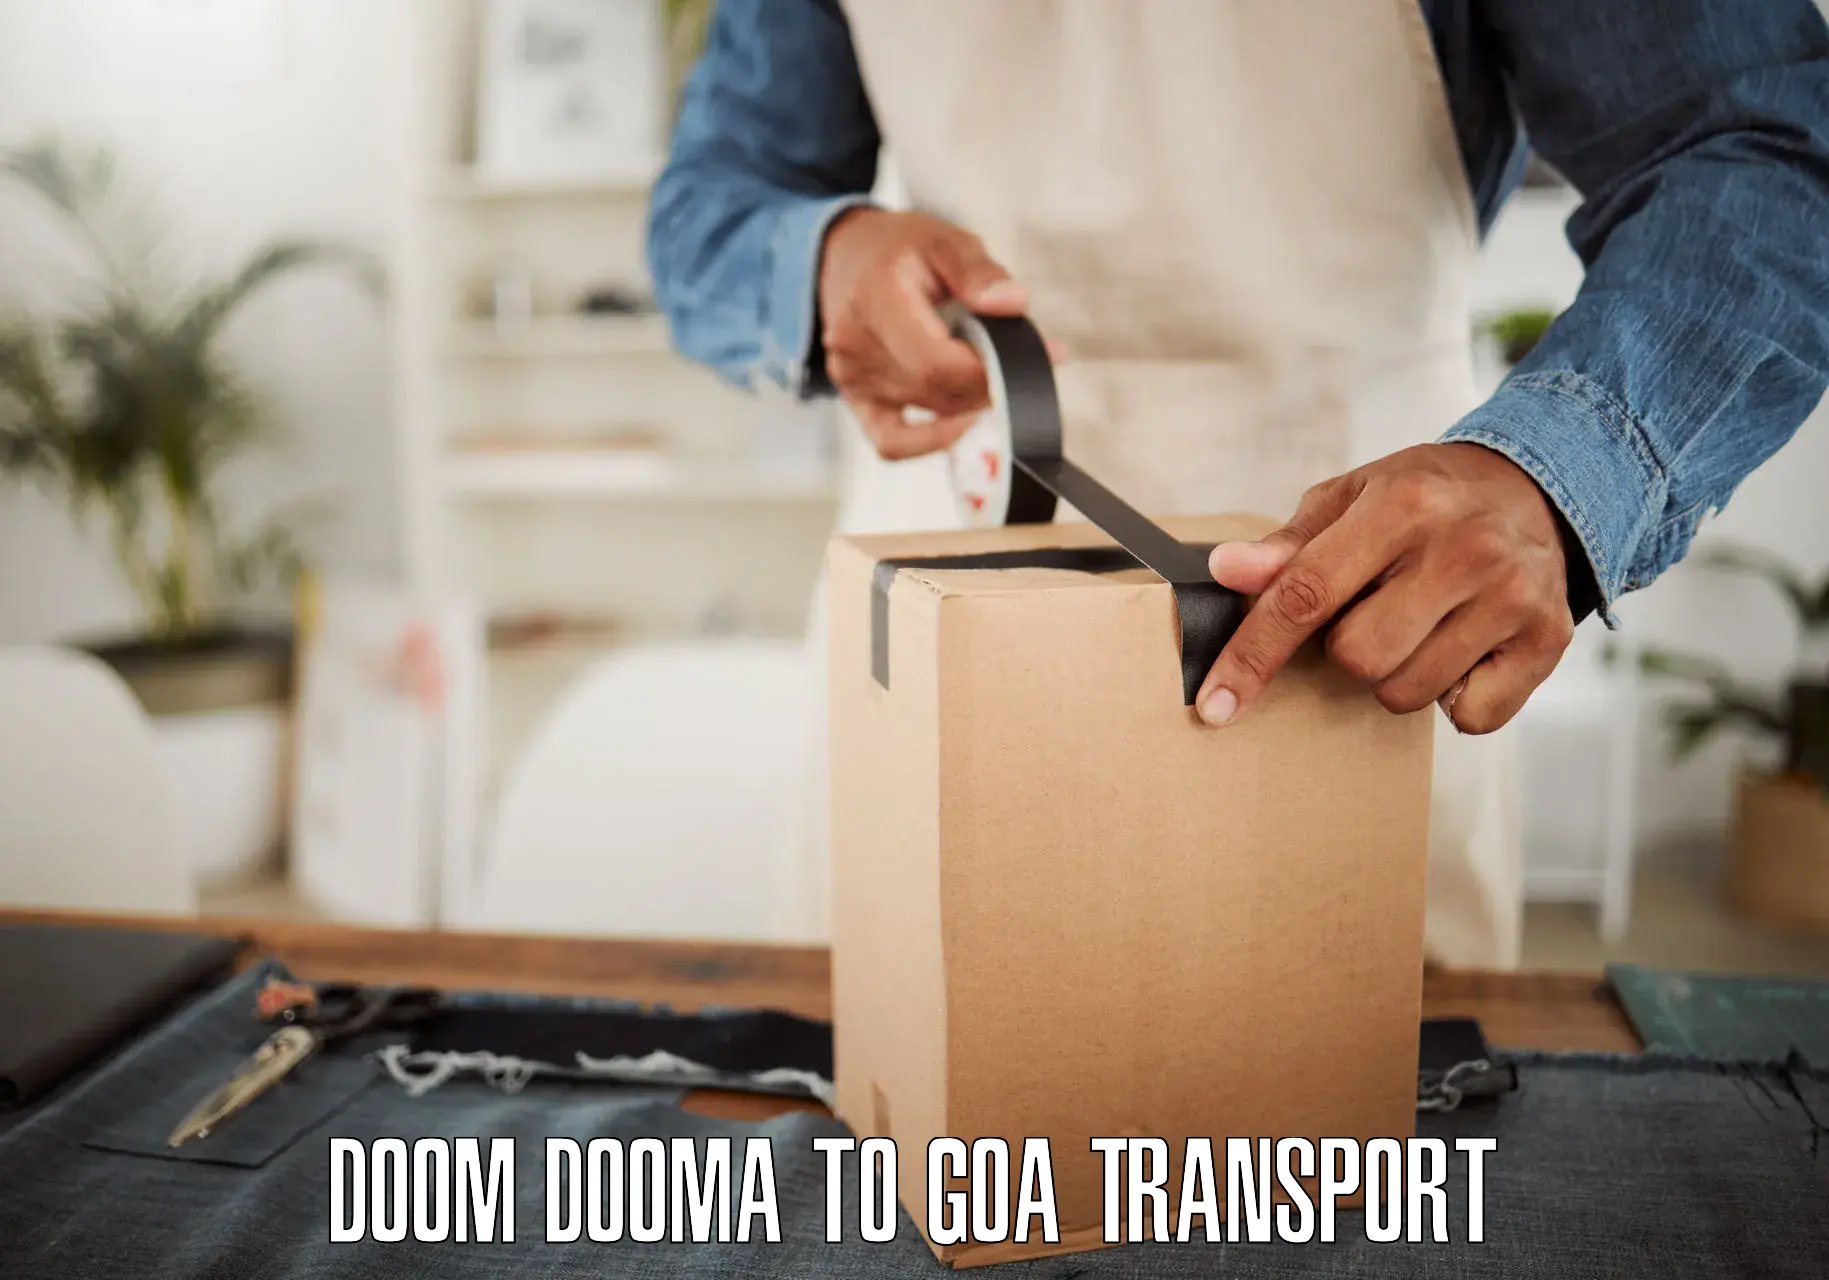 Bike transfer in Doom Dooma to Ponda